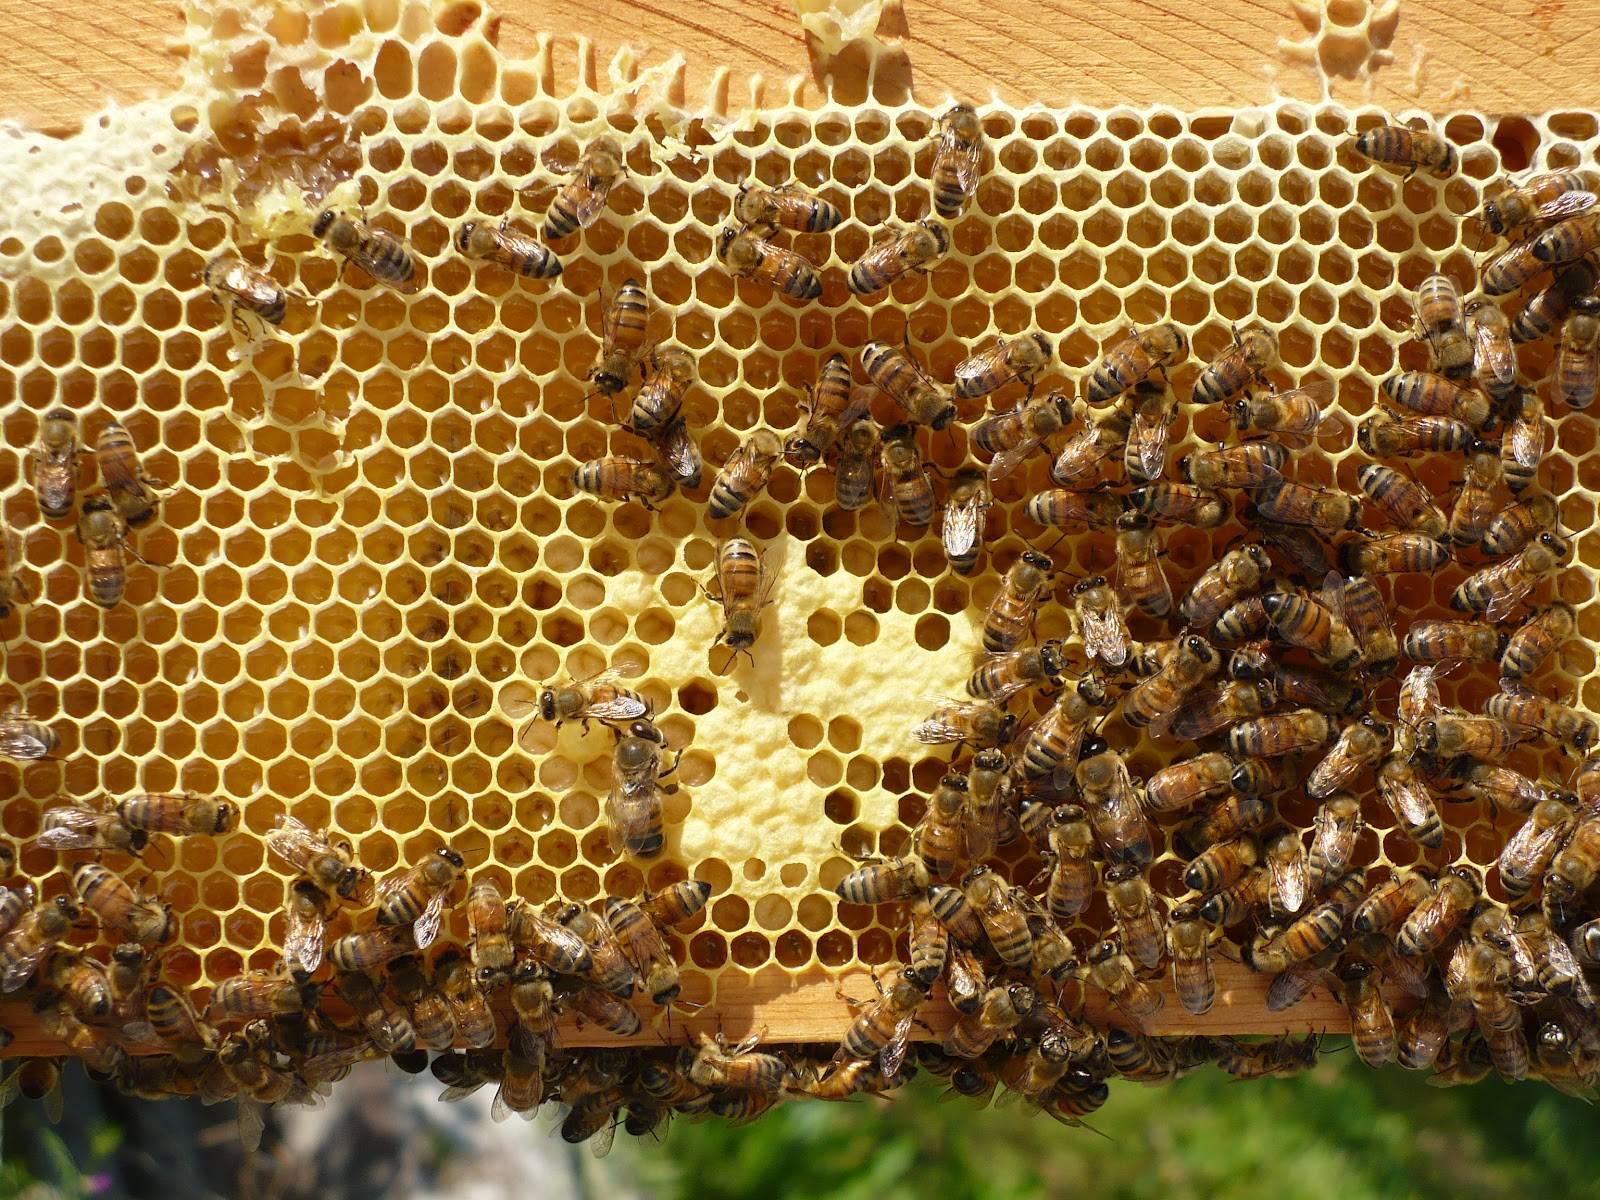 Применение личинок пчел для лечения - советы народной мудрости
                                             - 10 апреля
                                             - 43703603140 - медиаплатформа миртесен